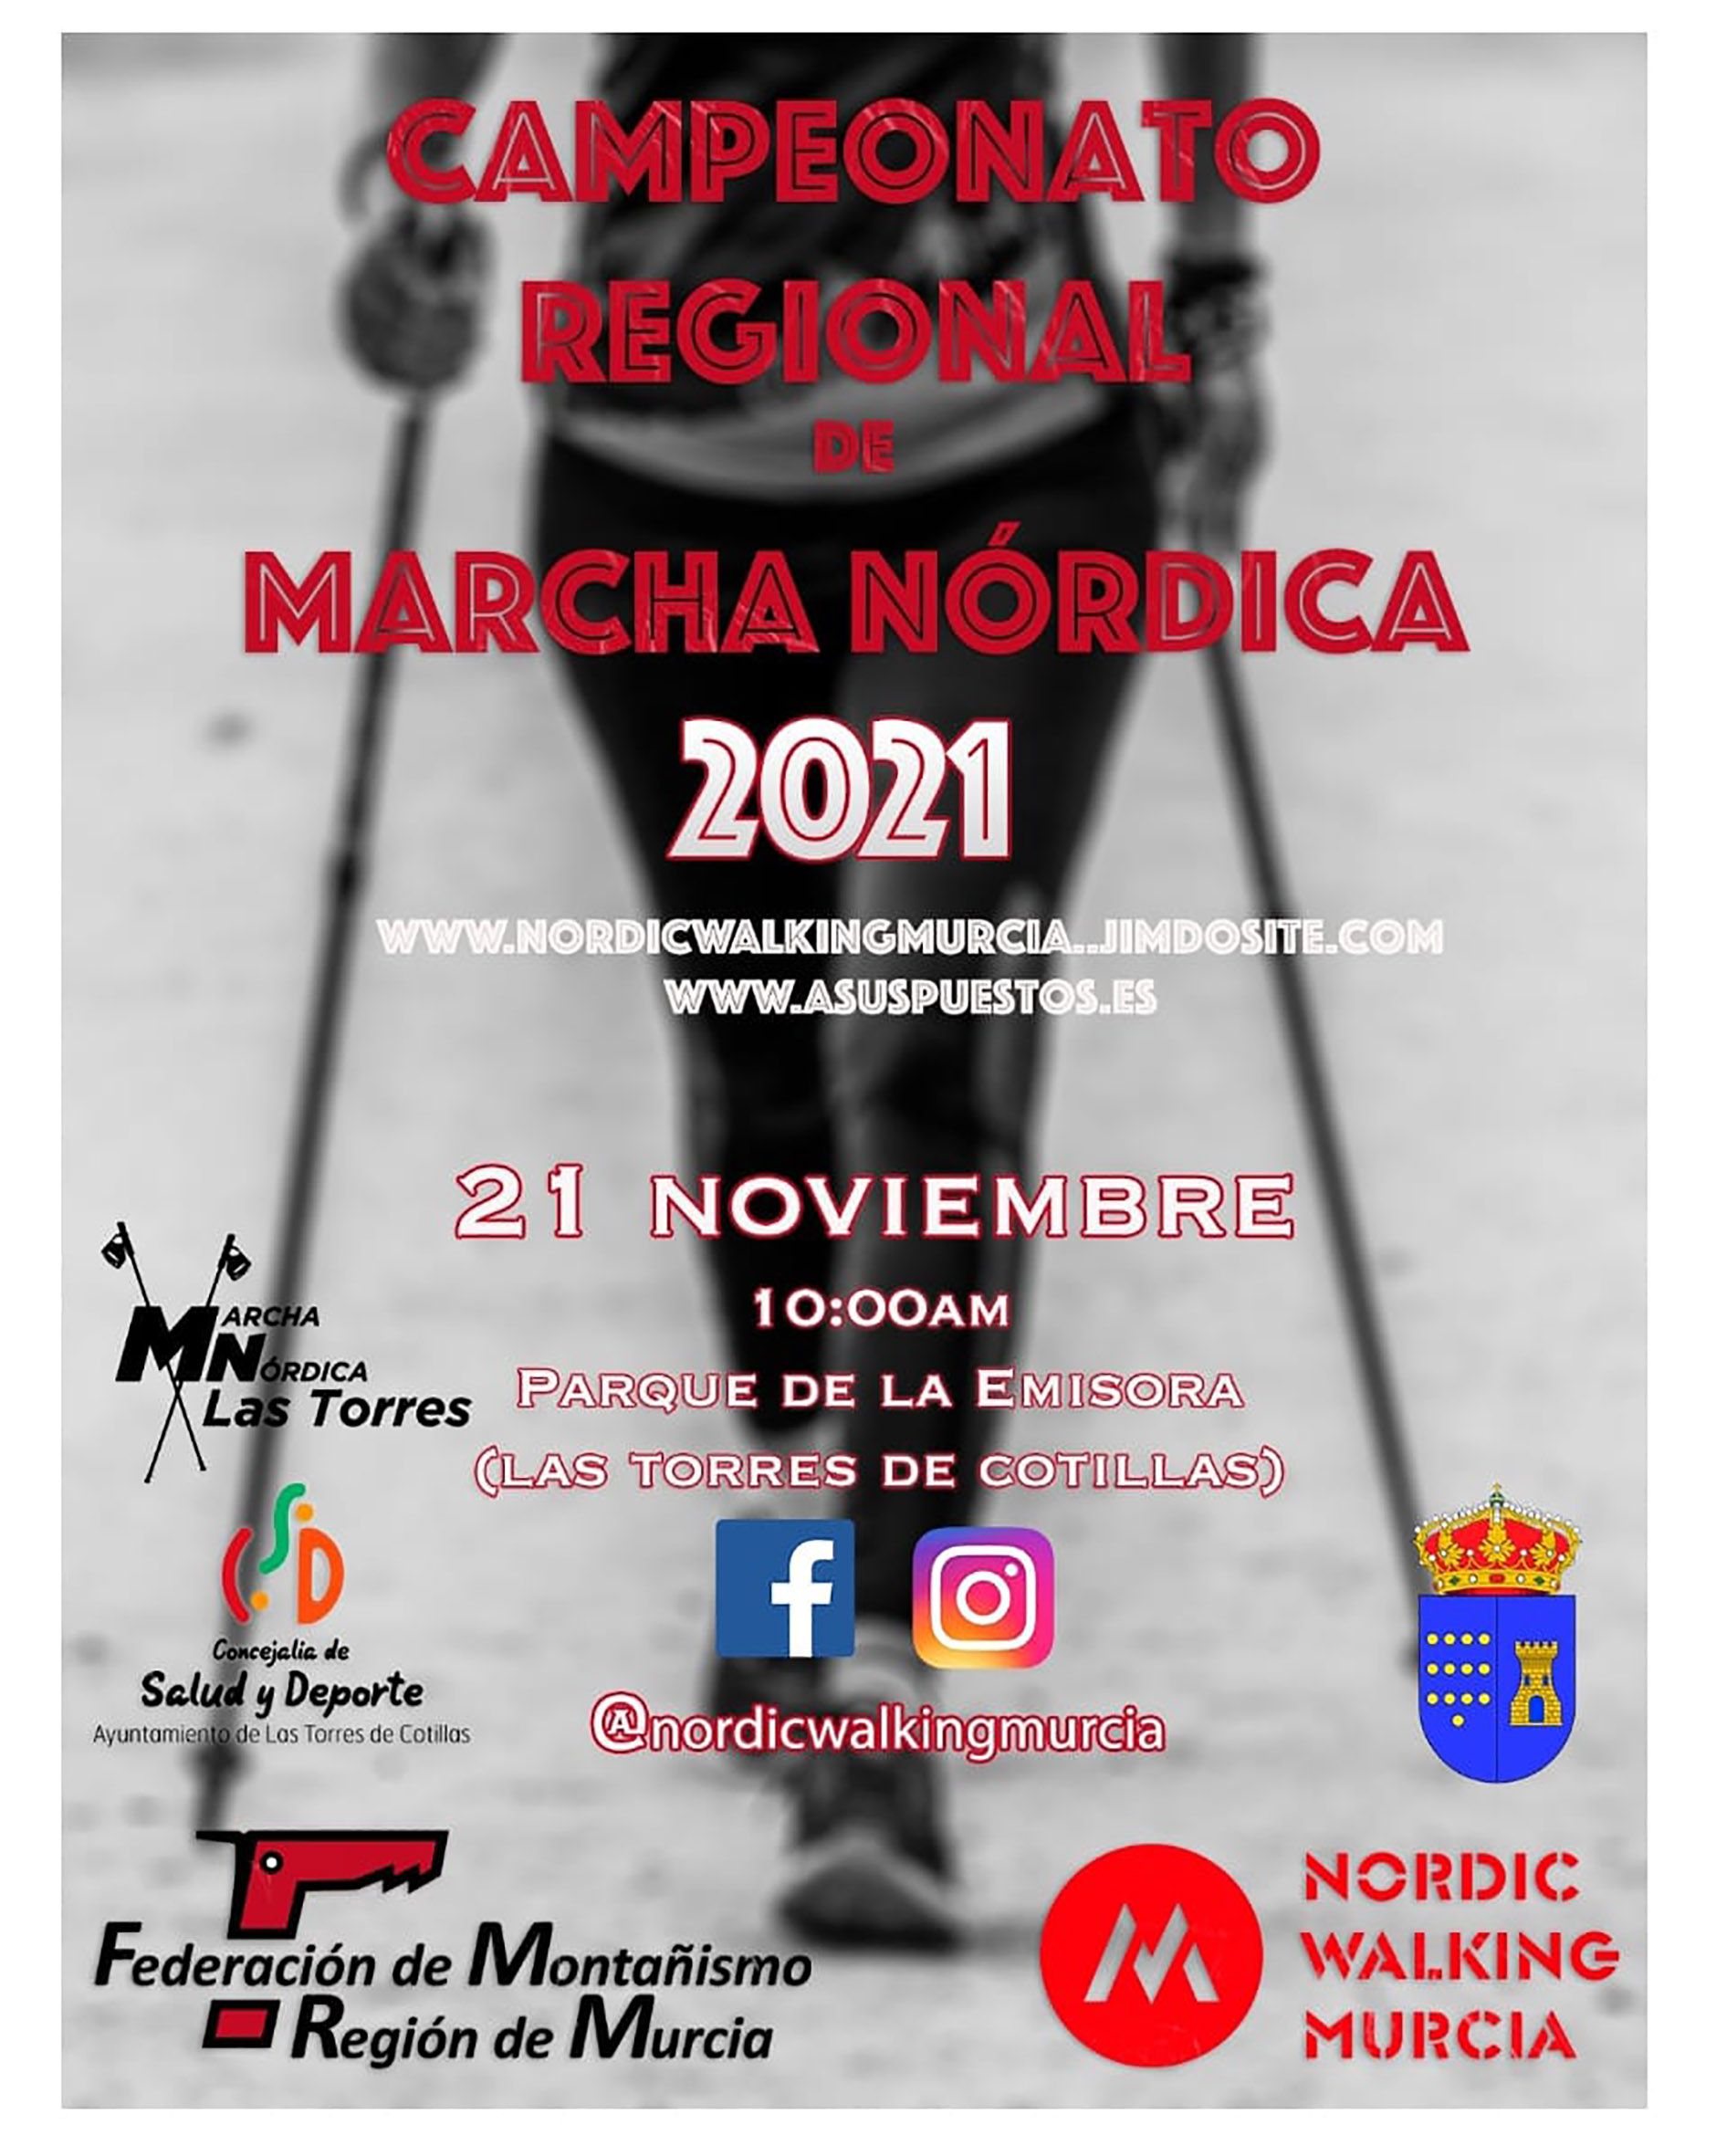 Campeonato Regional marcha nórdica